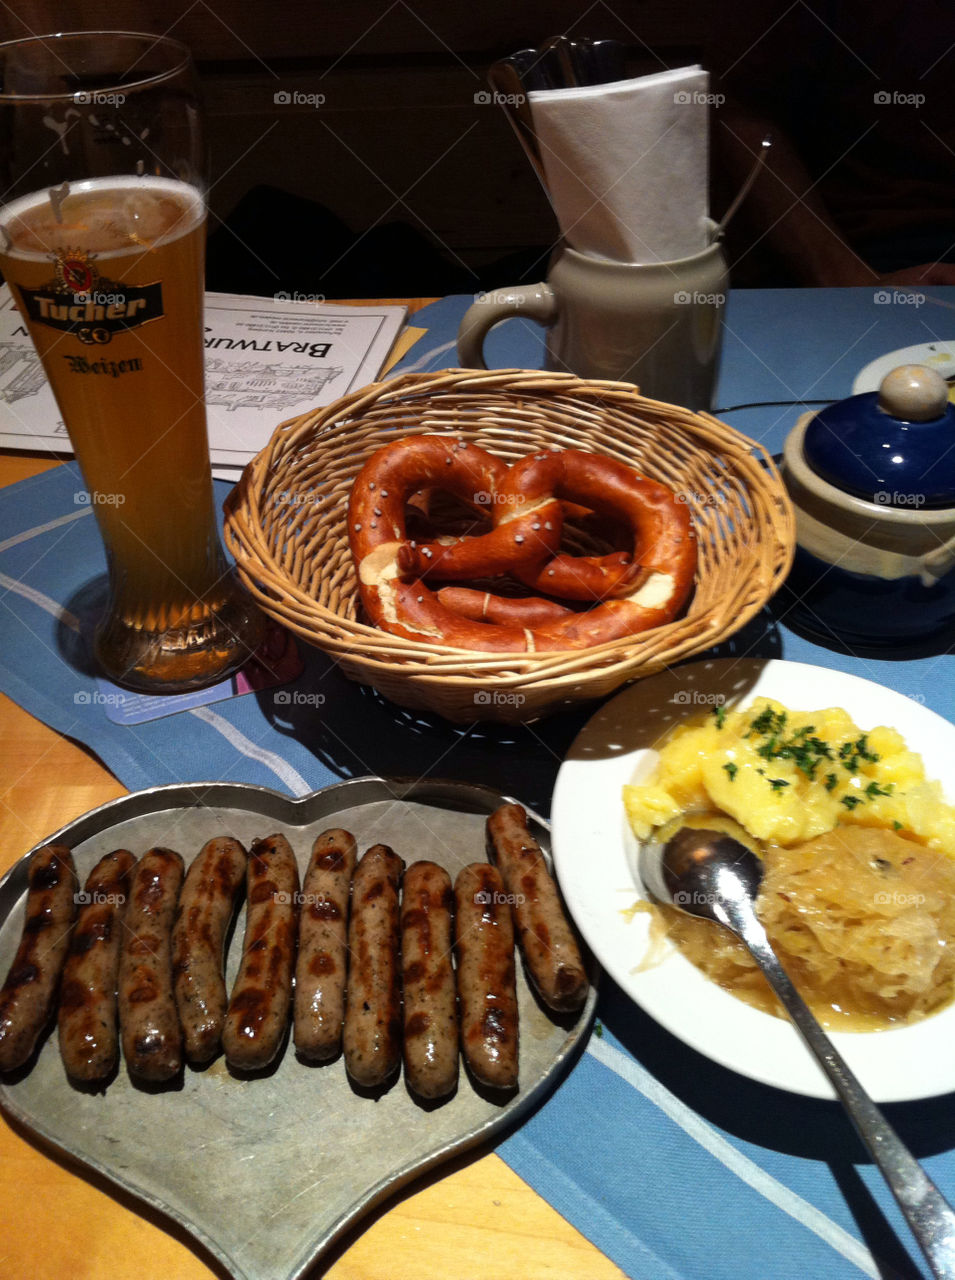 Nuremberg Sausage dinner in Nuremberg.